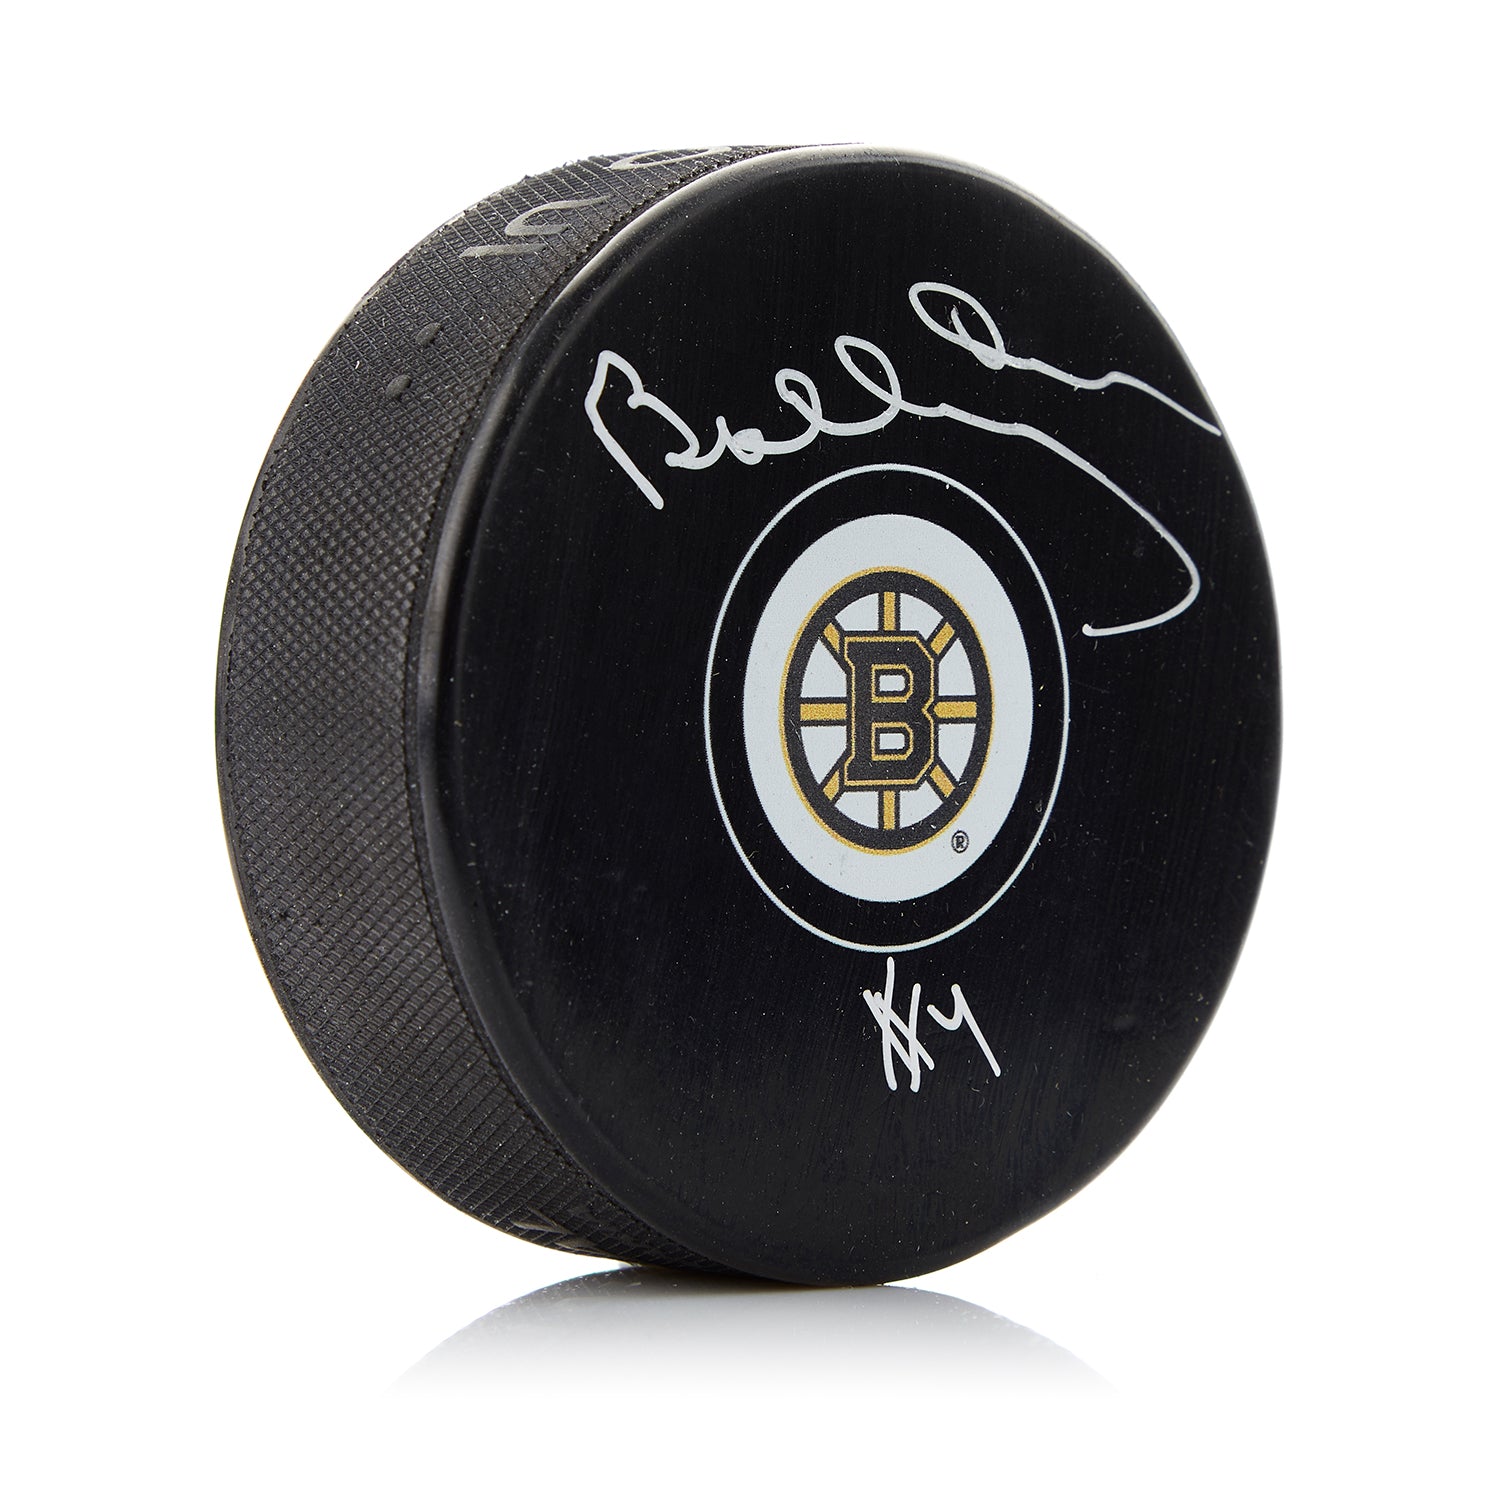 NHL St. Louis Blues Player Autograph ? Help Me Identify This : r/Autographs